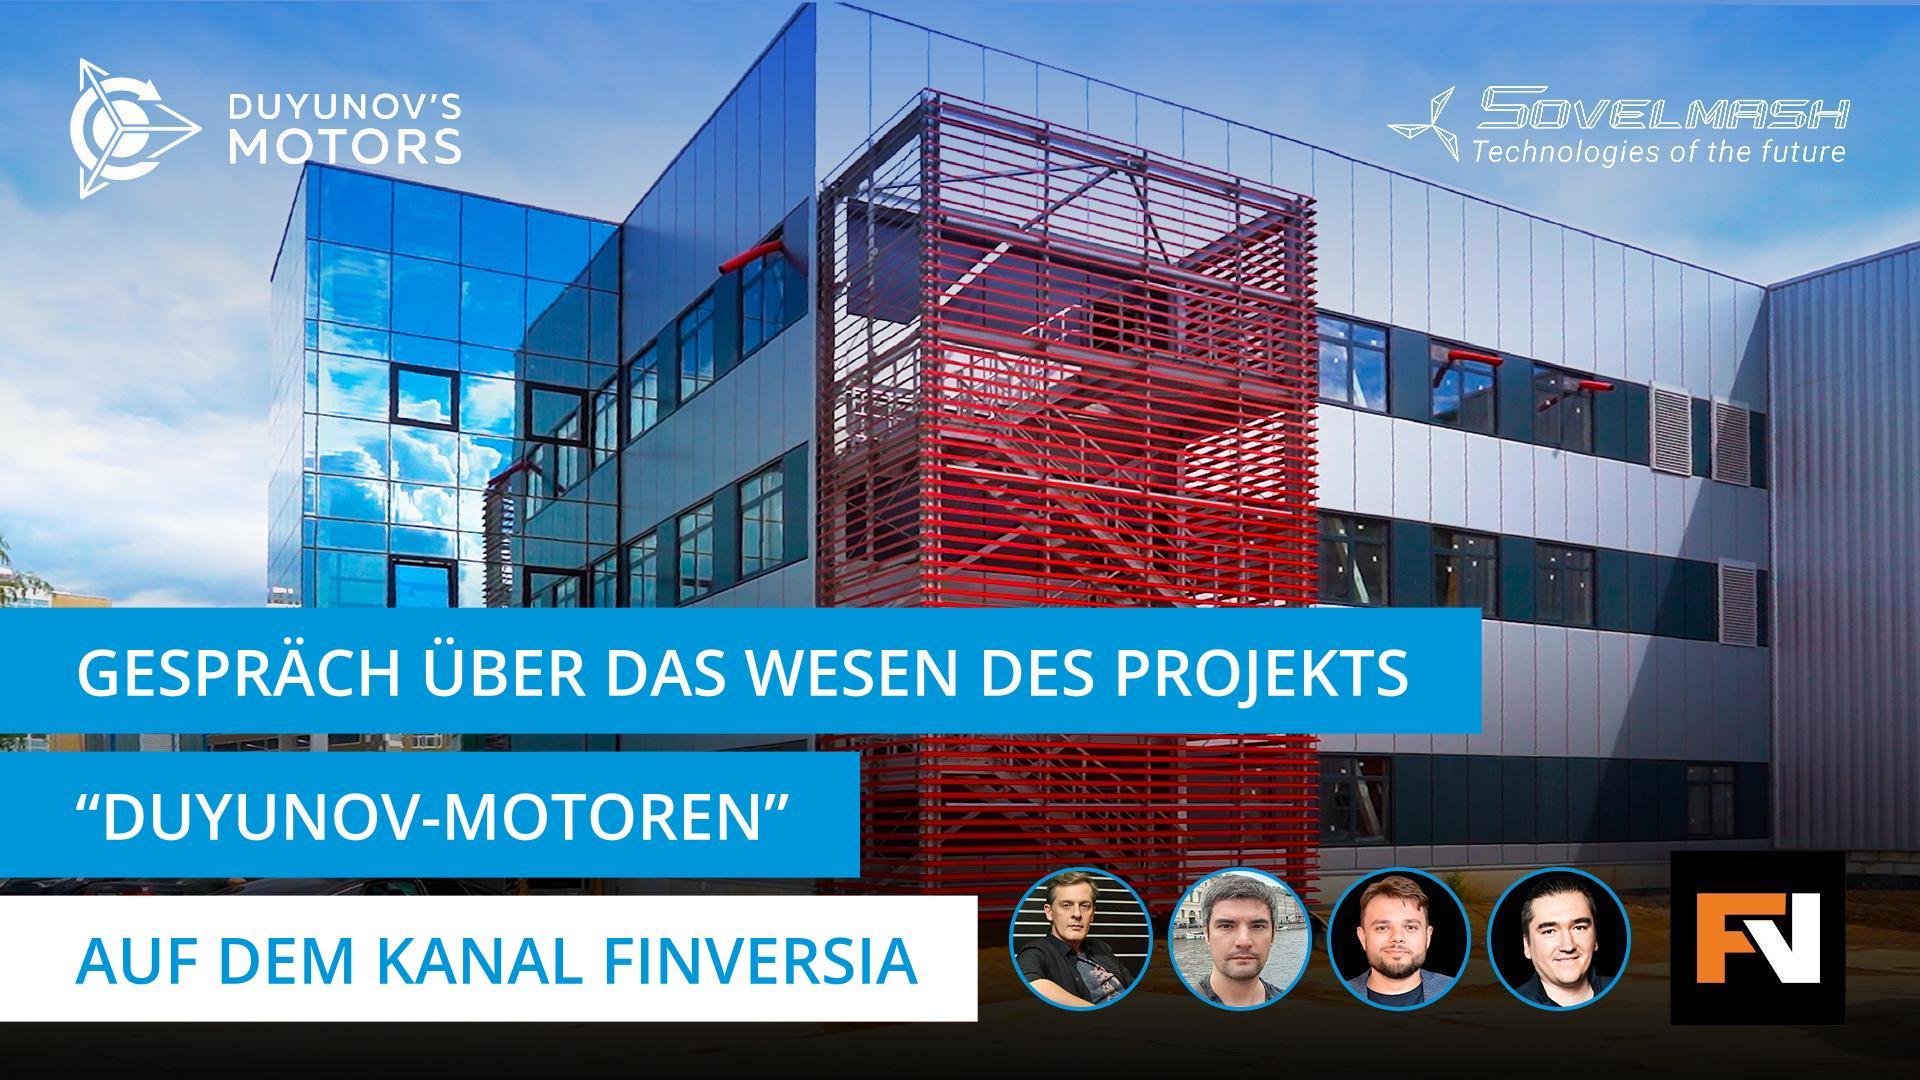 Live-Stream mit Alexander Sudarev und Investoren des Projekts auf dem YouTube-Kanal "Finversia"